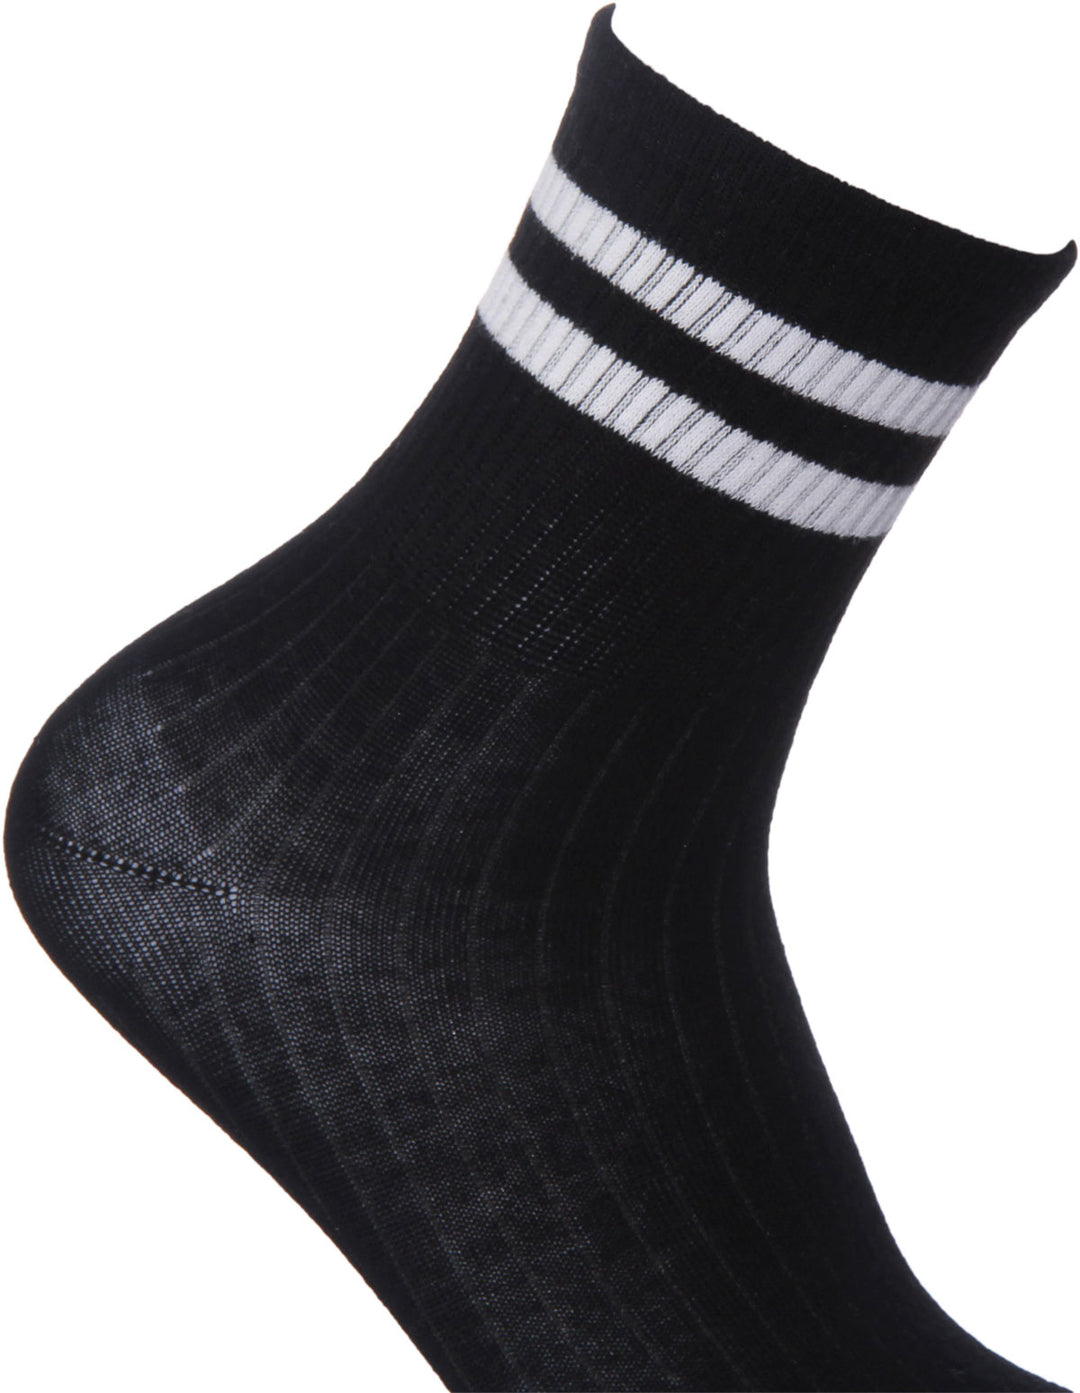 Justinreess England Socks Stripe Socks Socks In Black White